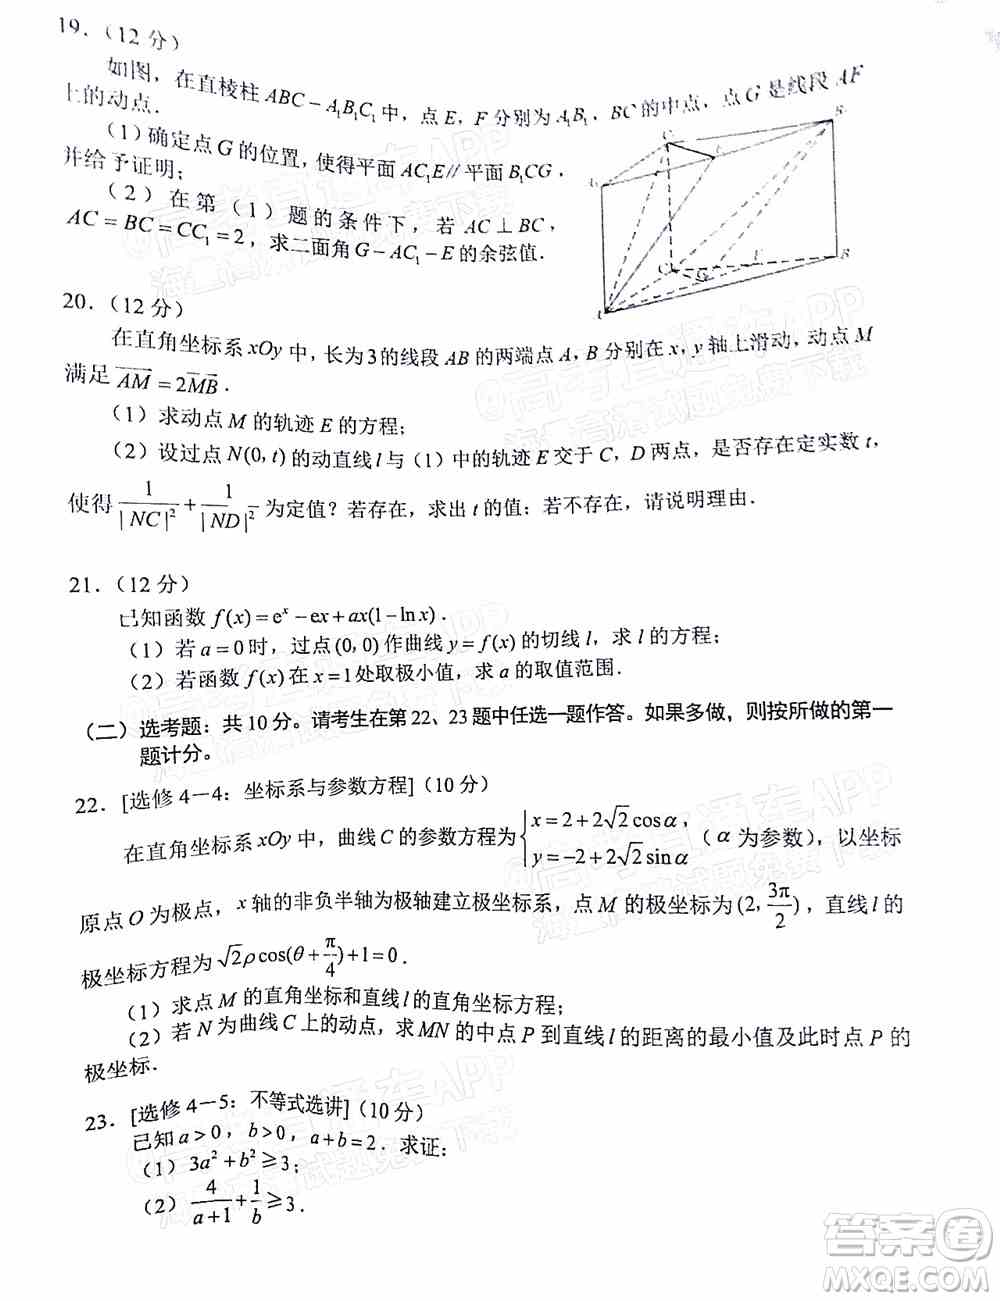 四川省大数据精准教学联盟2019级高三第二次统一监测理科数学试题及答案